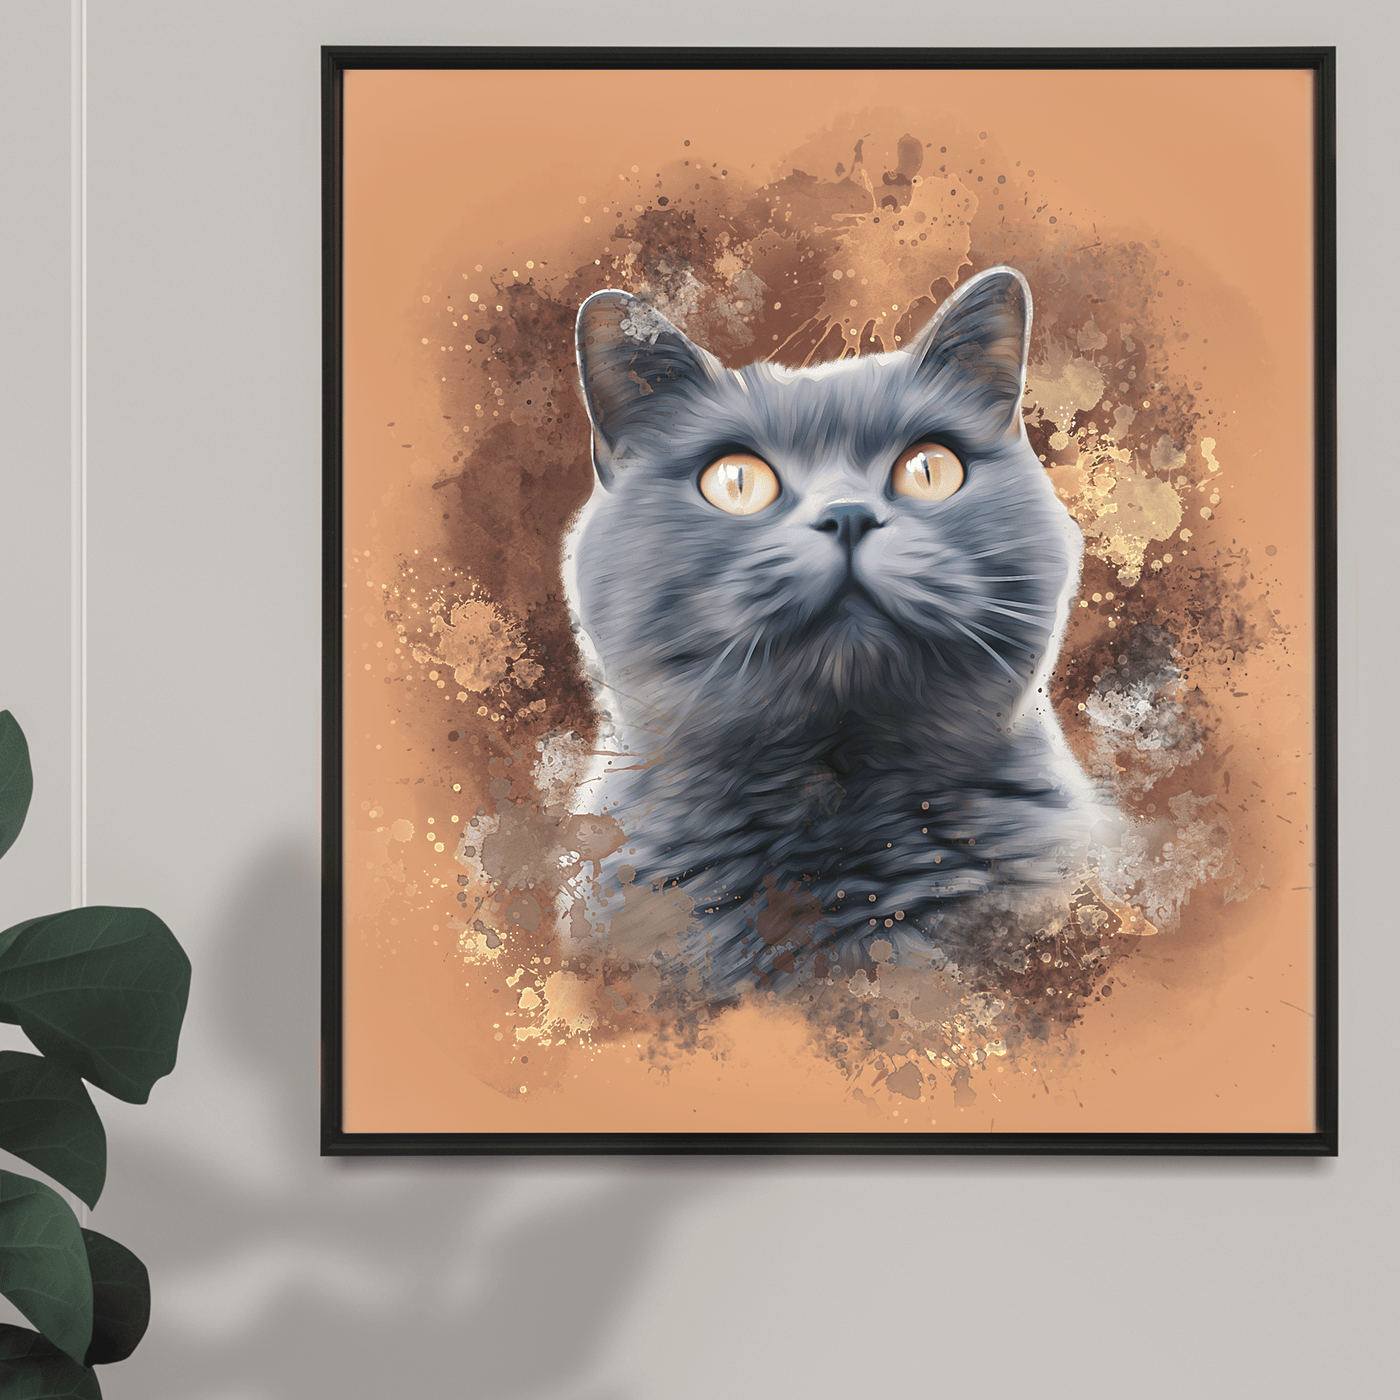 watercolor cat portrait of adorable black fur cat